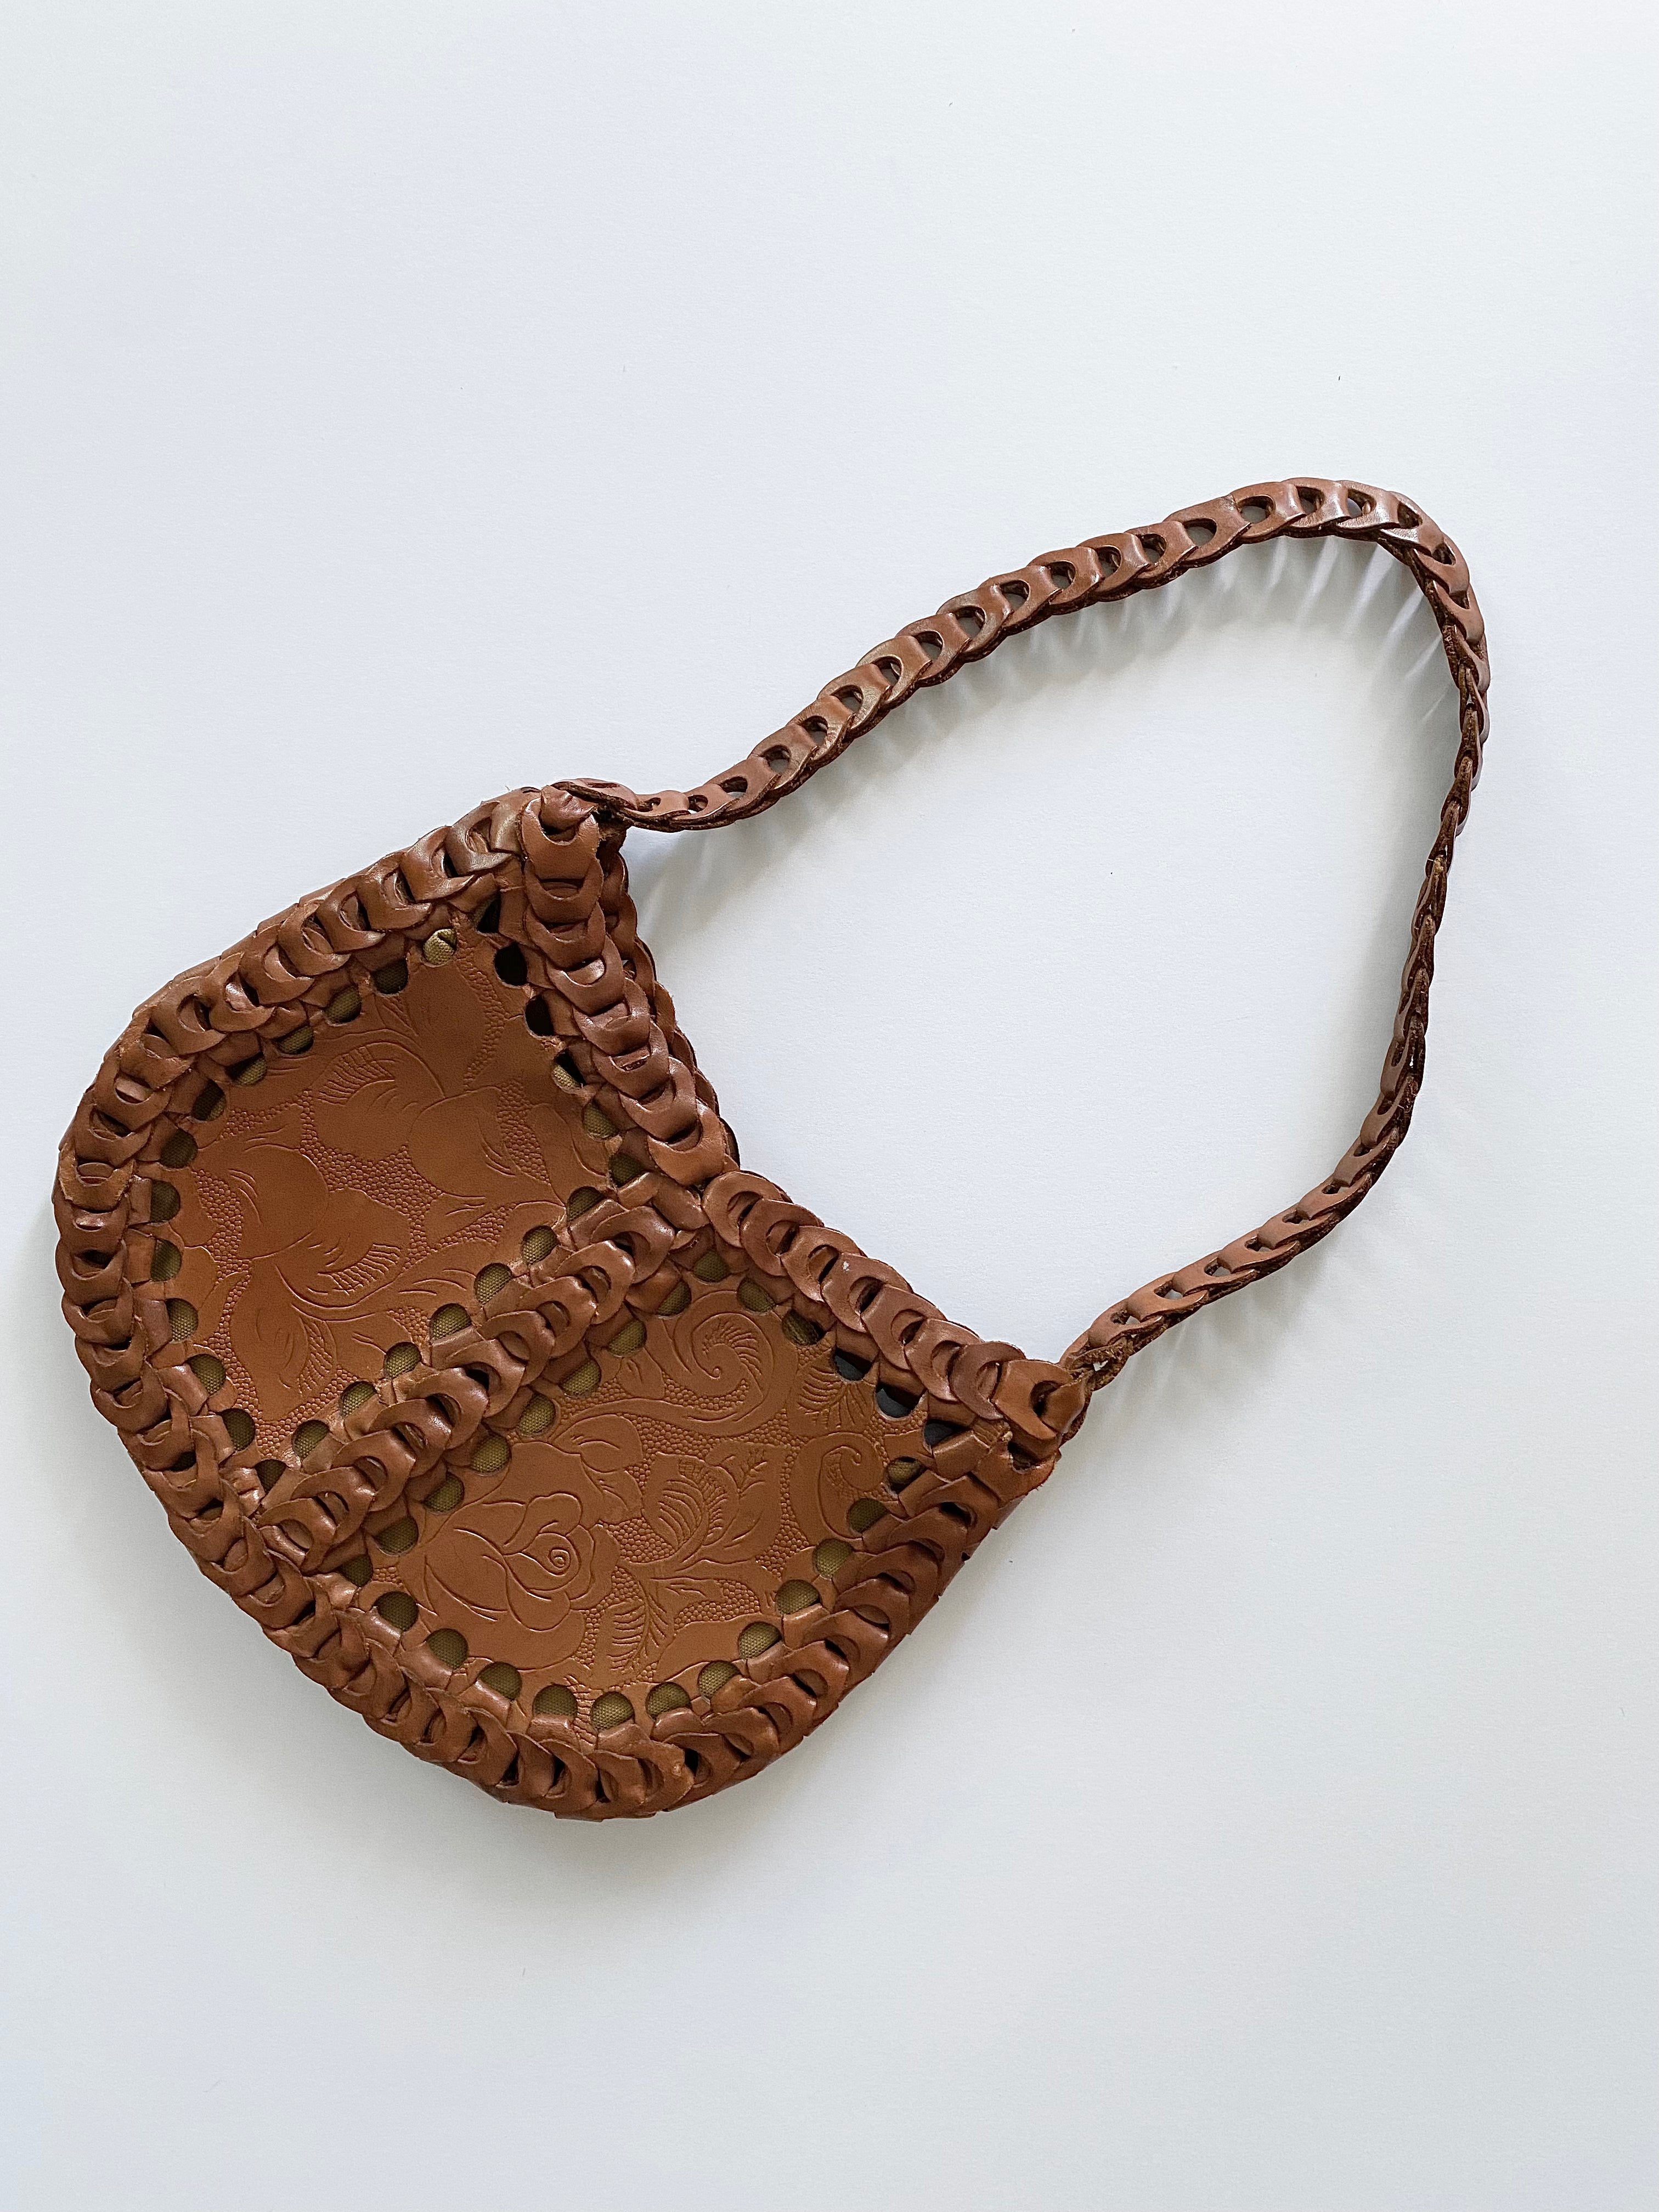 Vintage Italian Leather Satchel